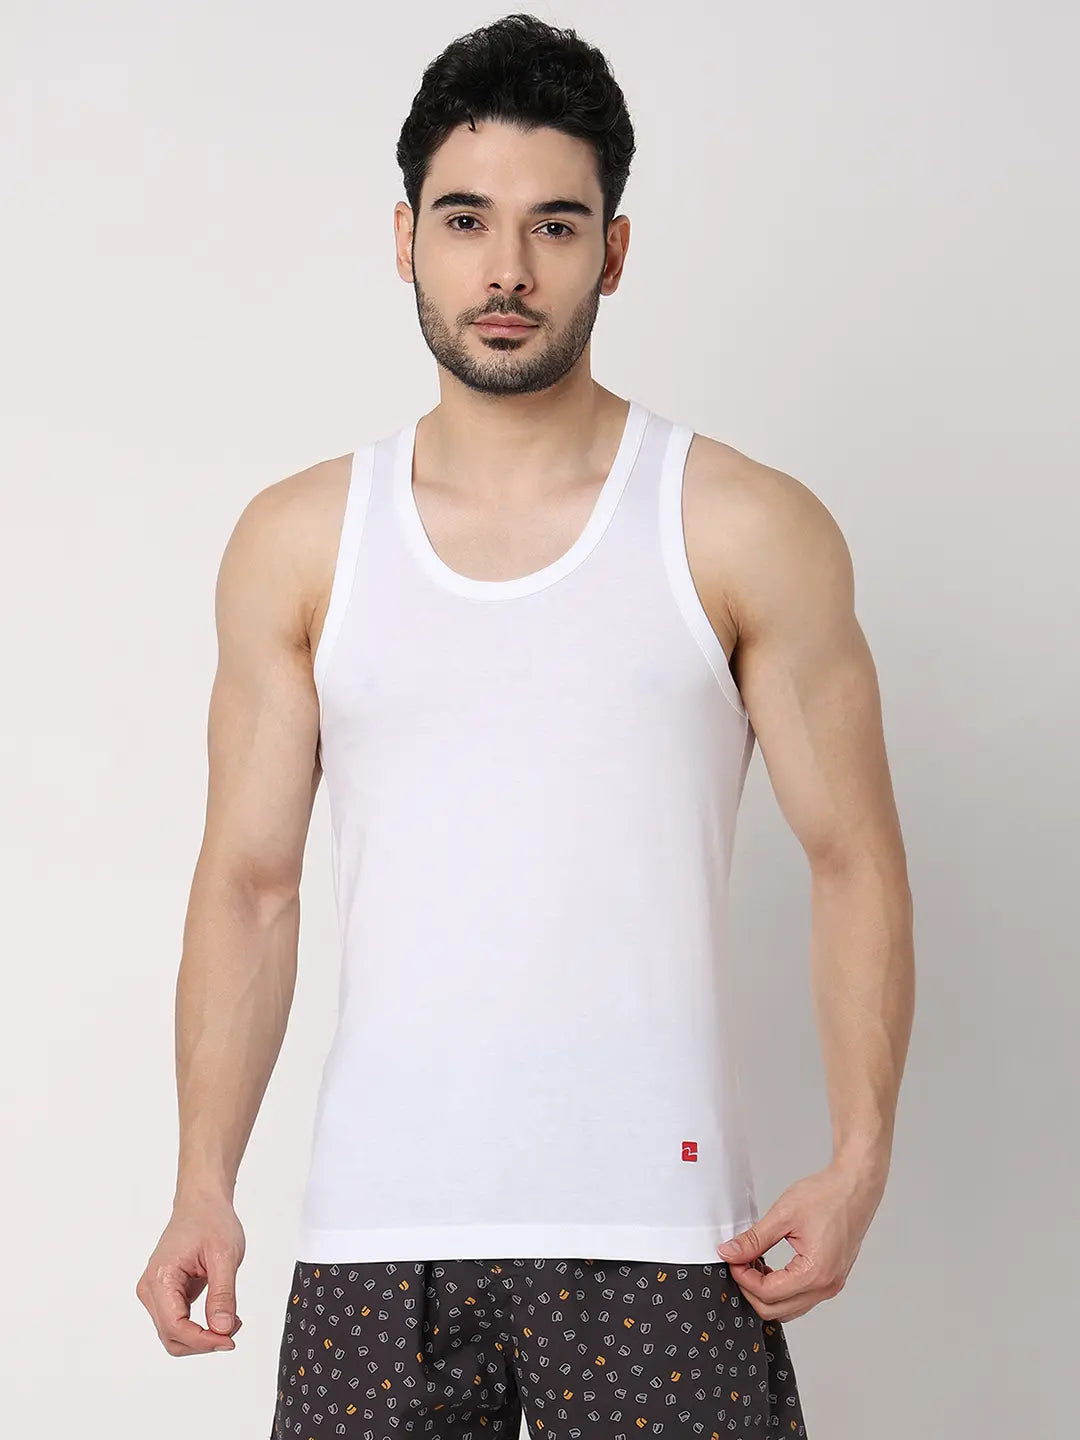 Underjeans by Spykar Men Premium White Cotton Blend Regular Fit Vest